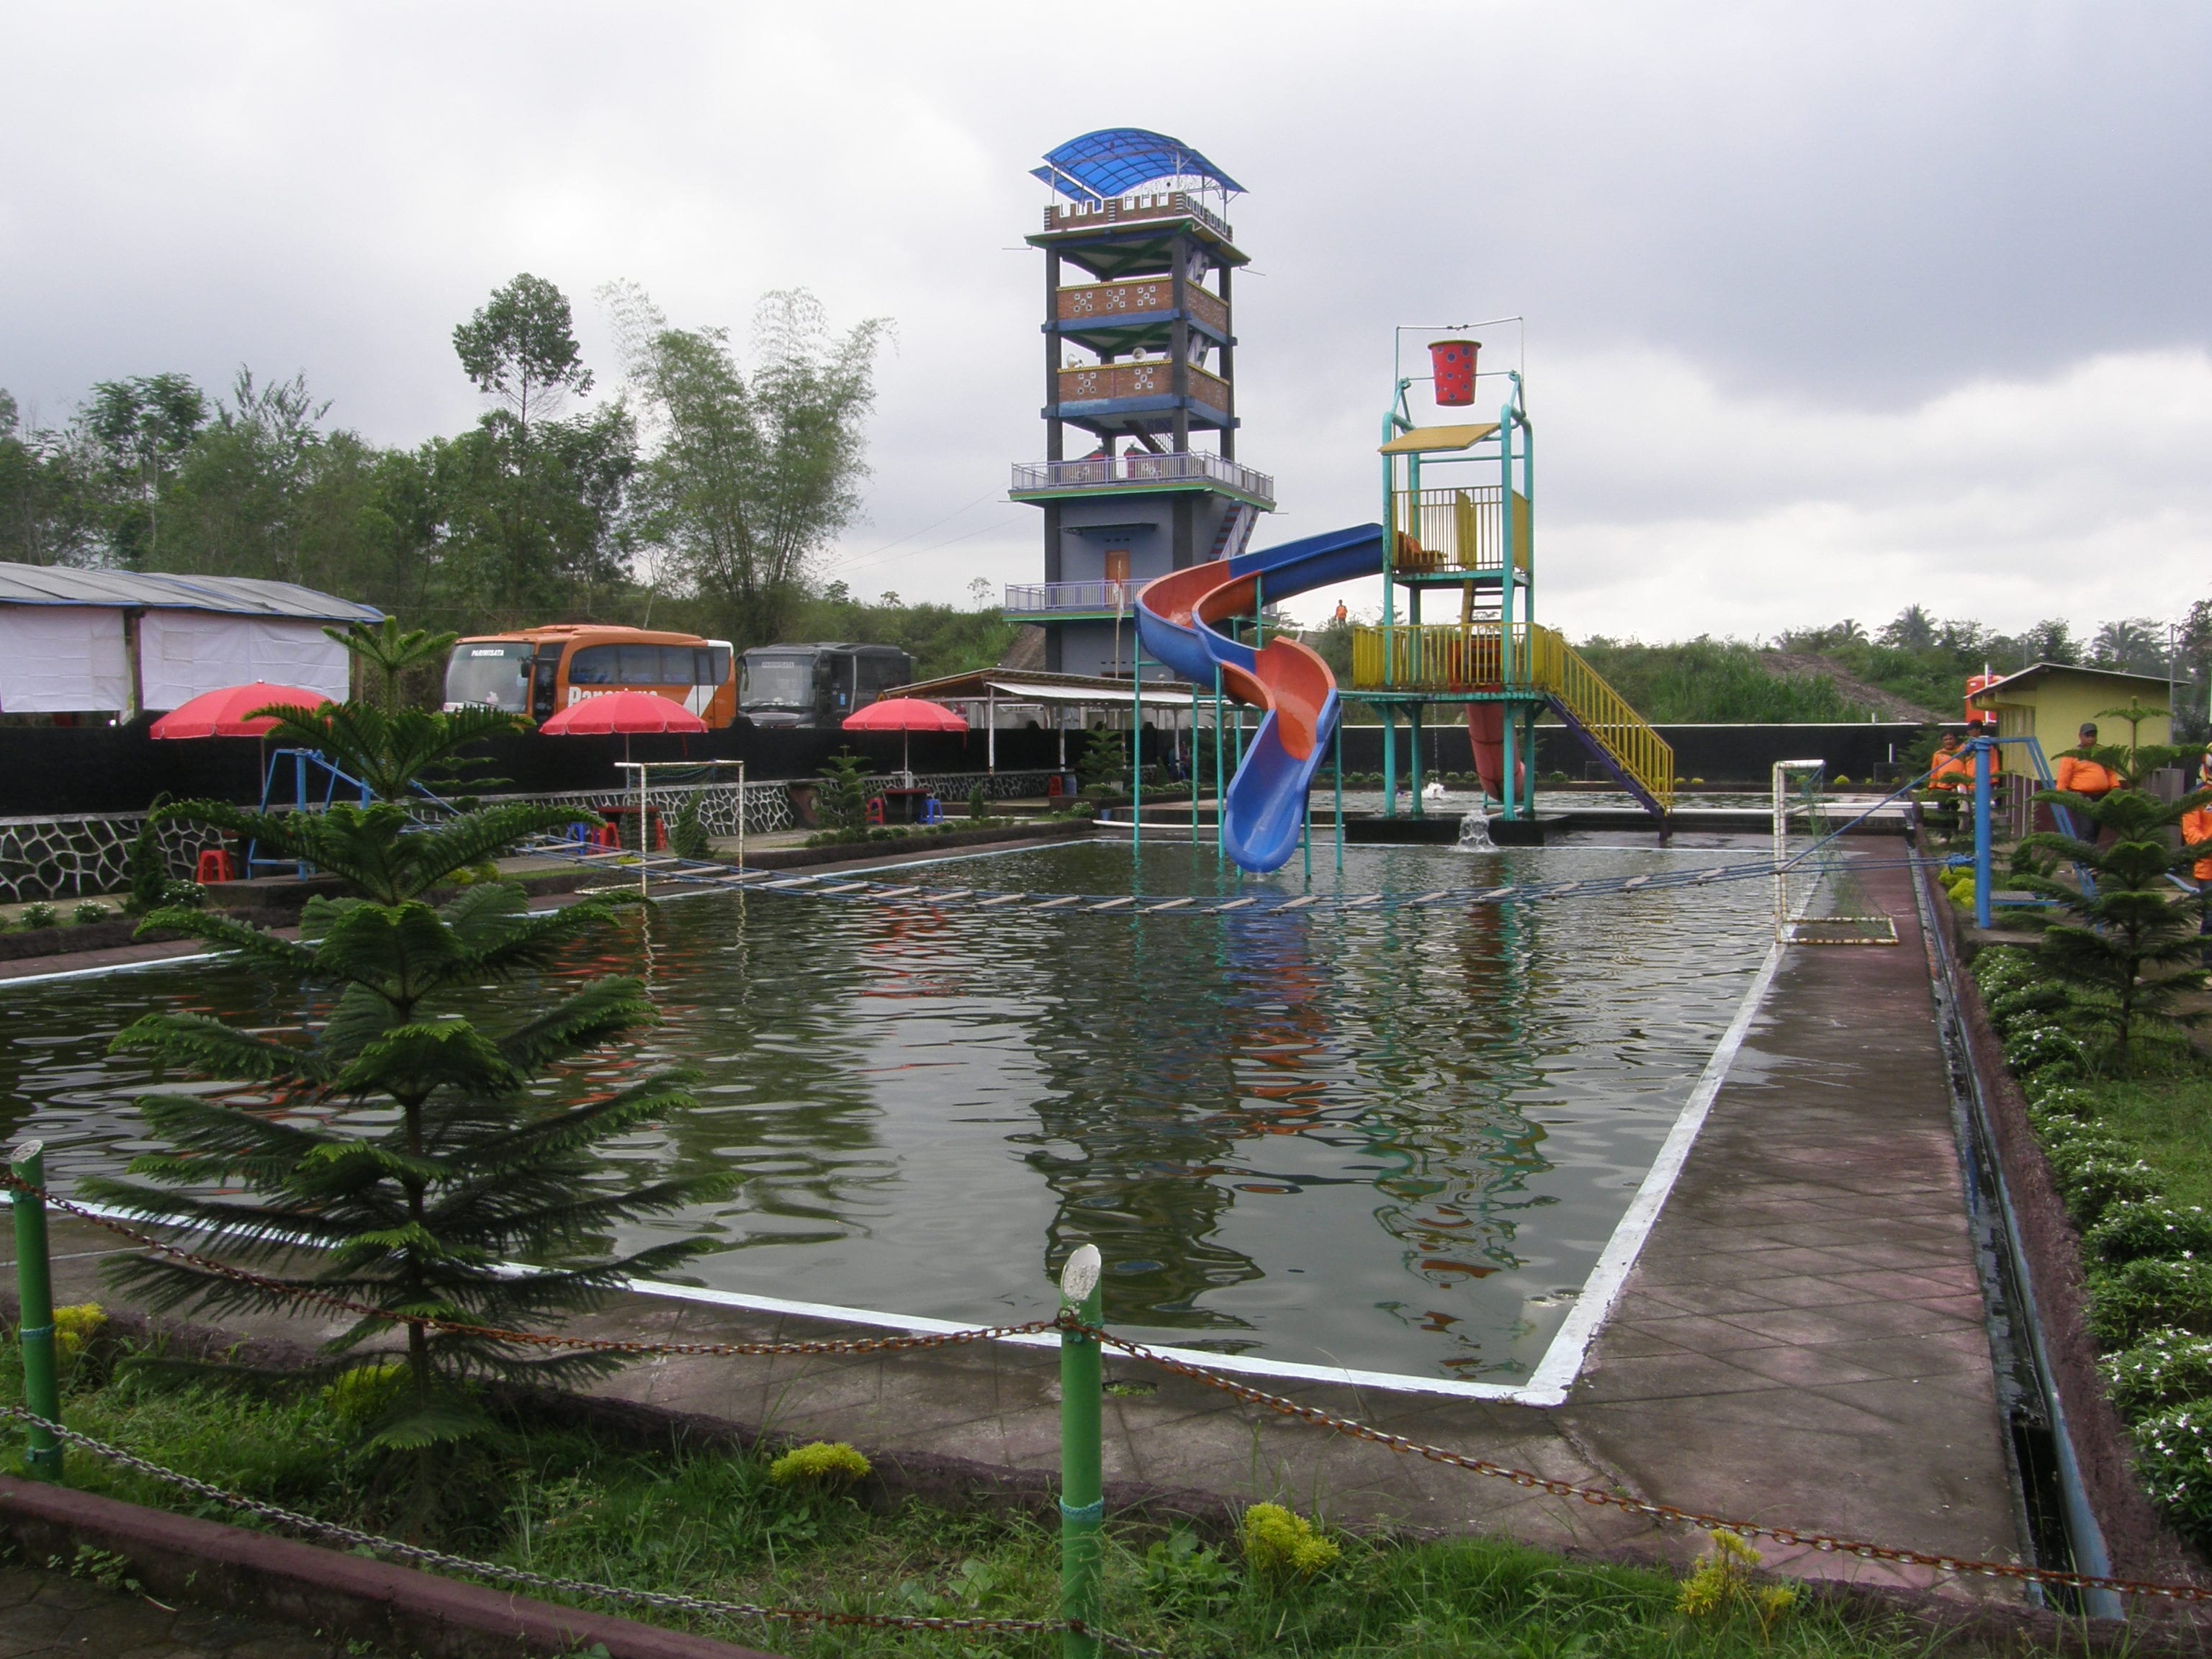 Swimming pool and warning/watch tower, Kemiren Village